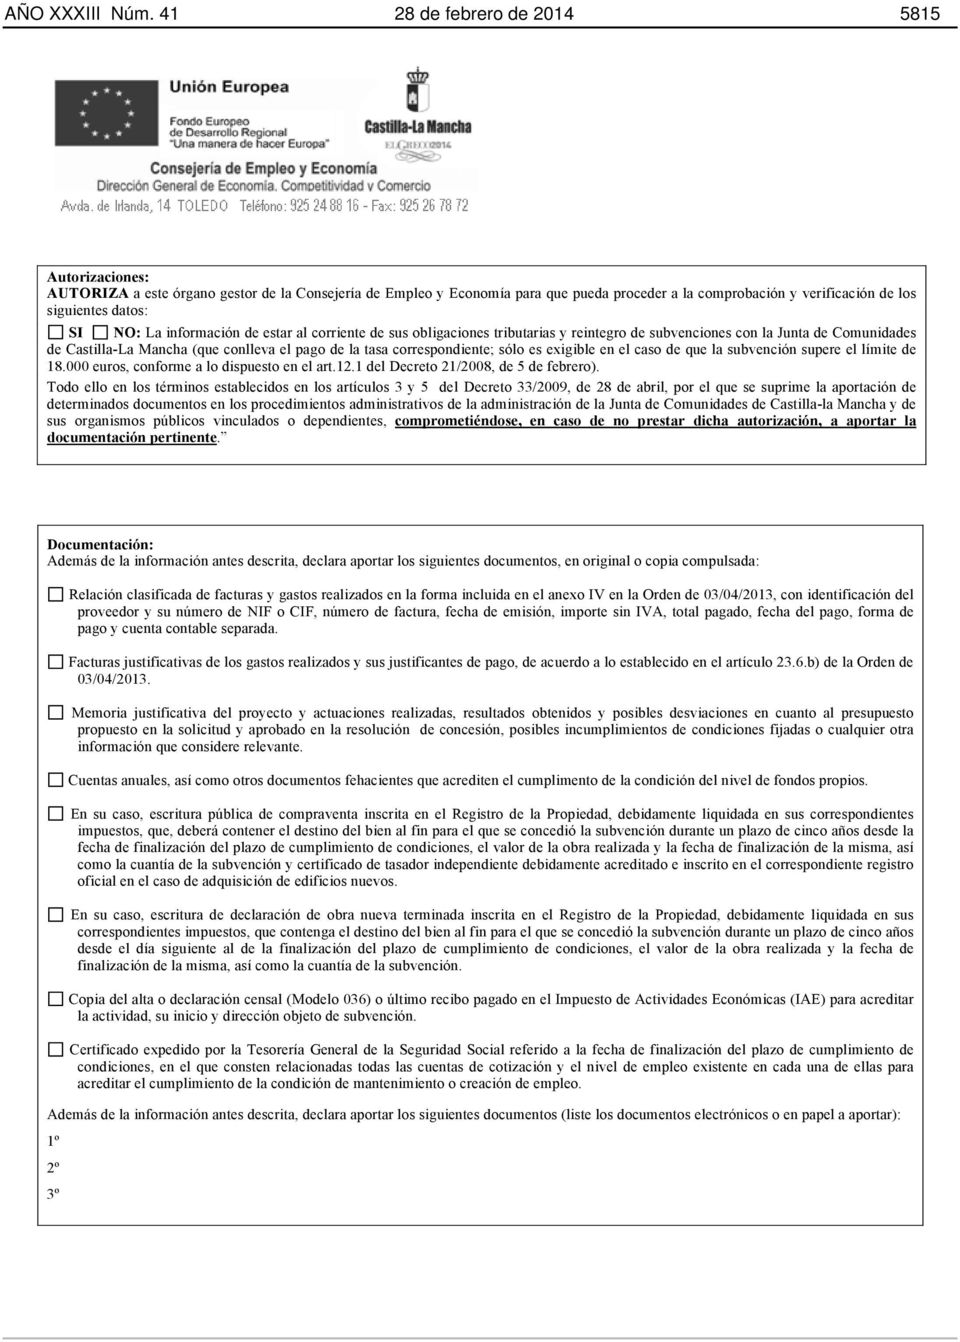 NO: La información de estar al corriente de sus obligaciones tributarias y reintegro de subvenciones con la Junta de Comunidades de Castilla-La Mancha (que conlleva el pago de la tasa